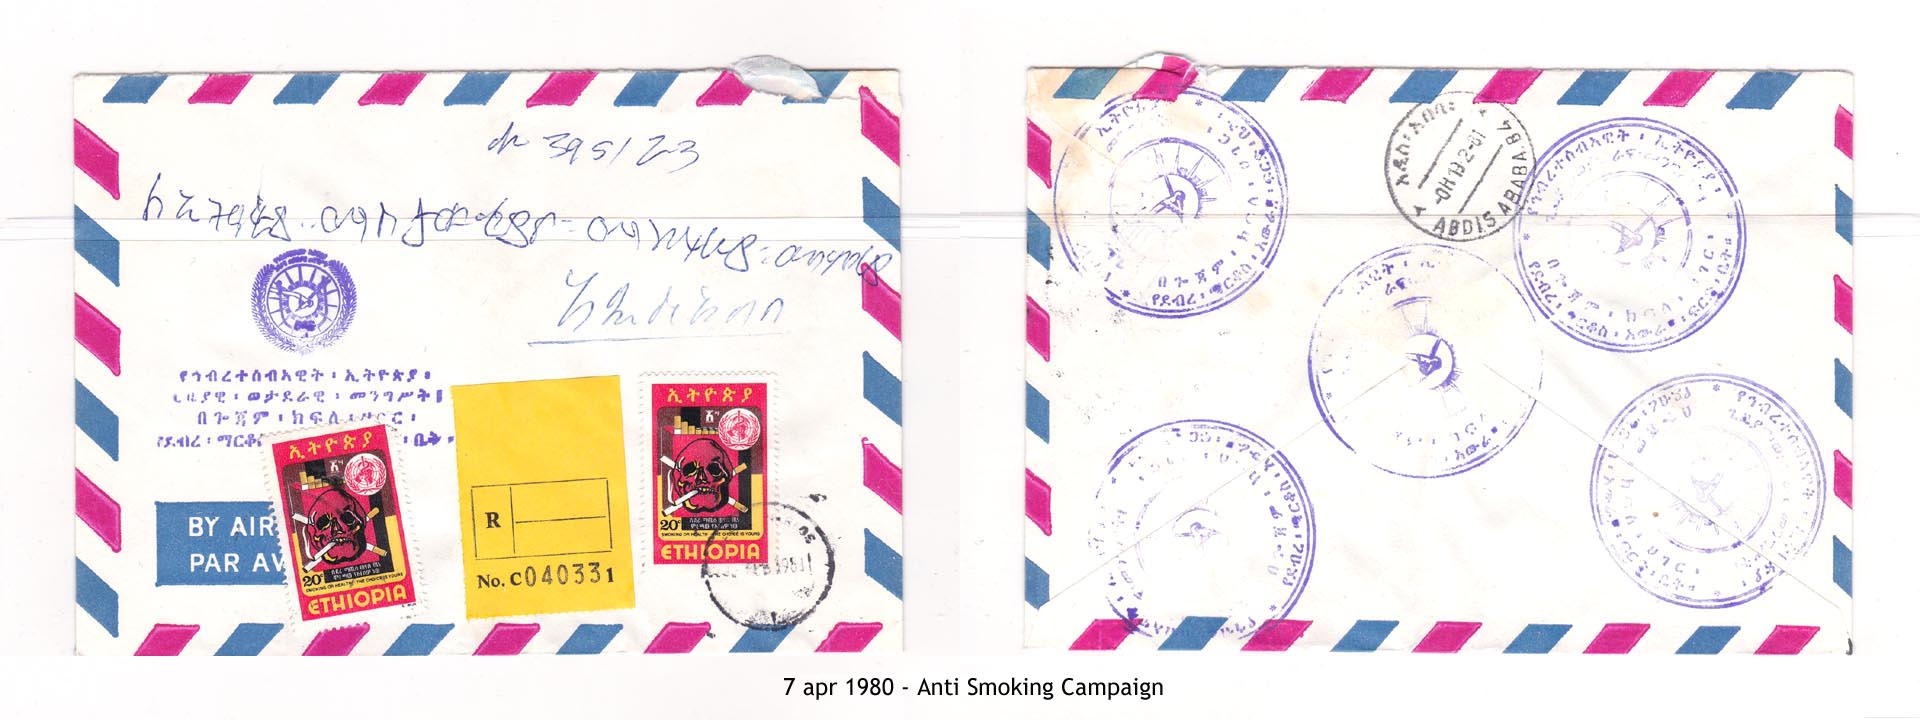 19800407 - Anti Smoking Campaign z